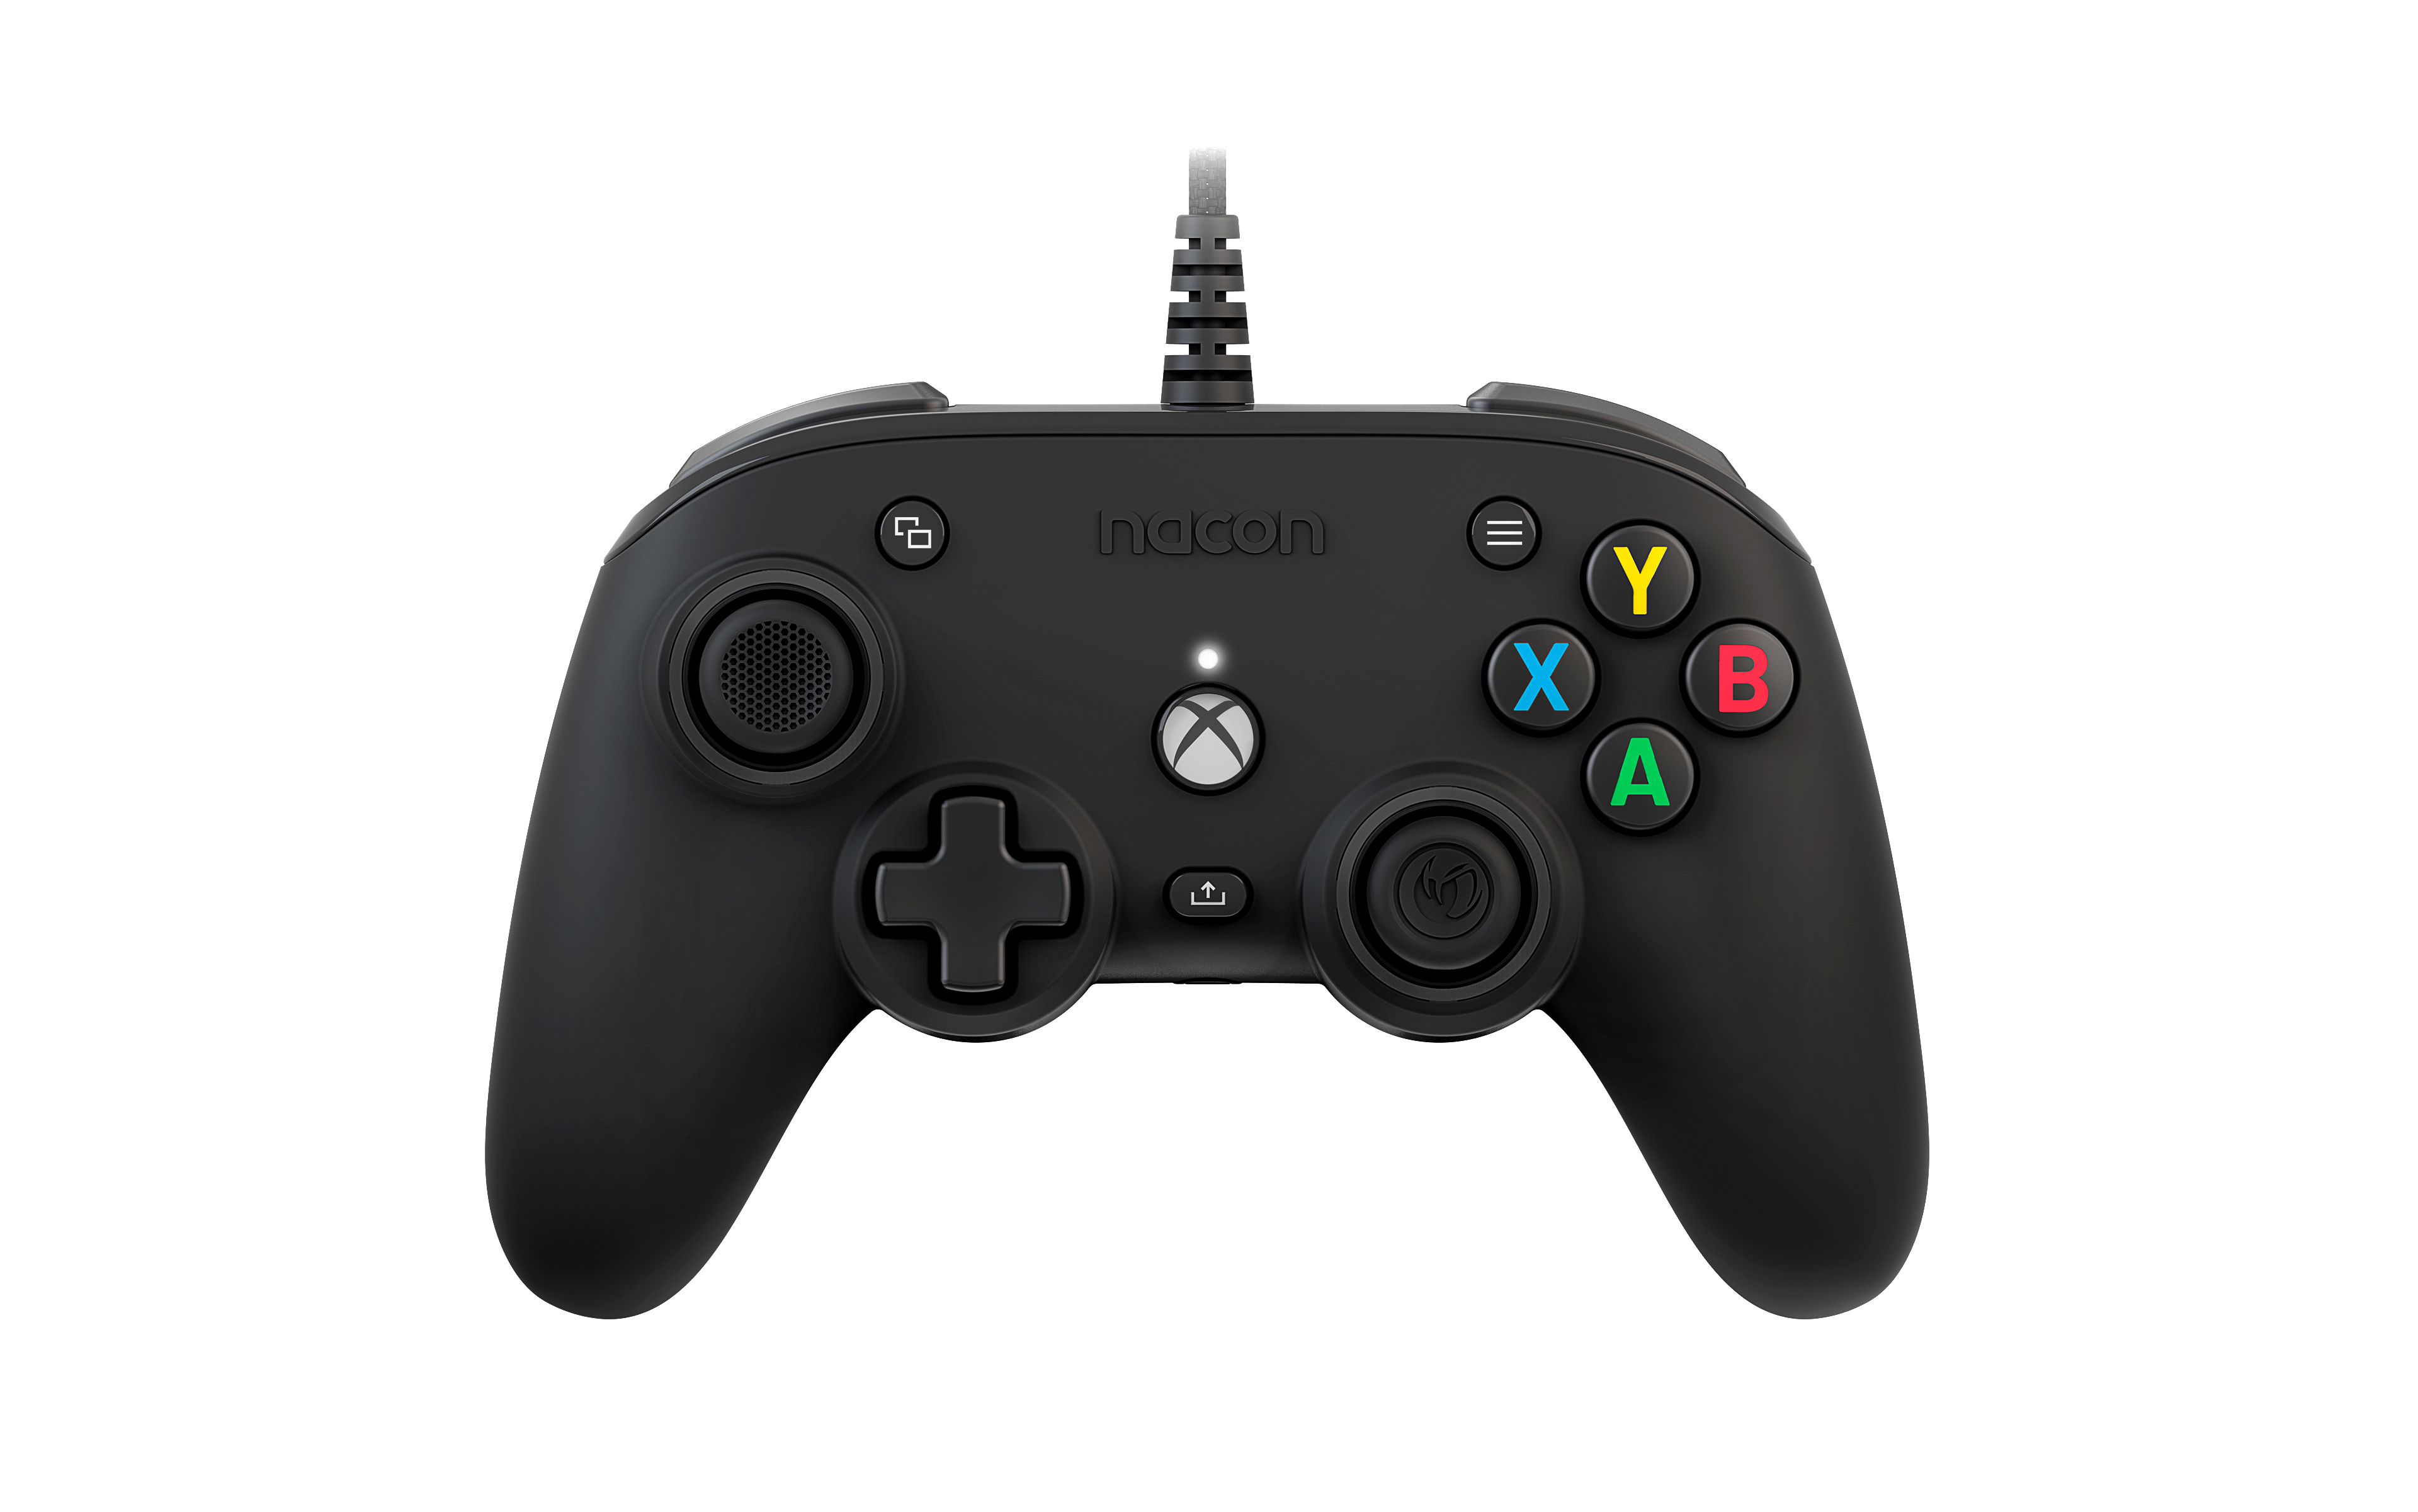 One Xbox DESIGND NACON Controller Series SCHWARZ CON. Schwarz XBOX COMPACT FOR XBOX X, PRO Xbox Controller NACON für